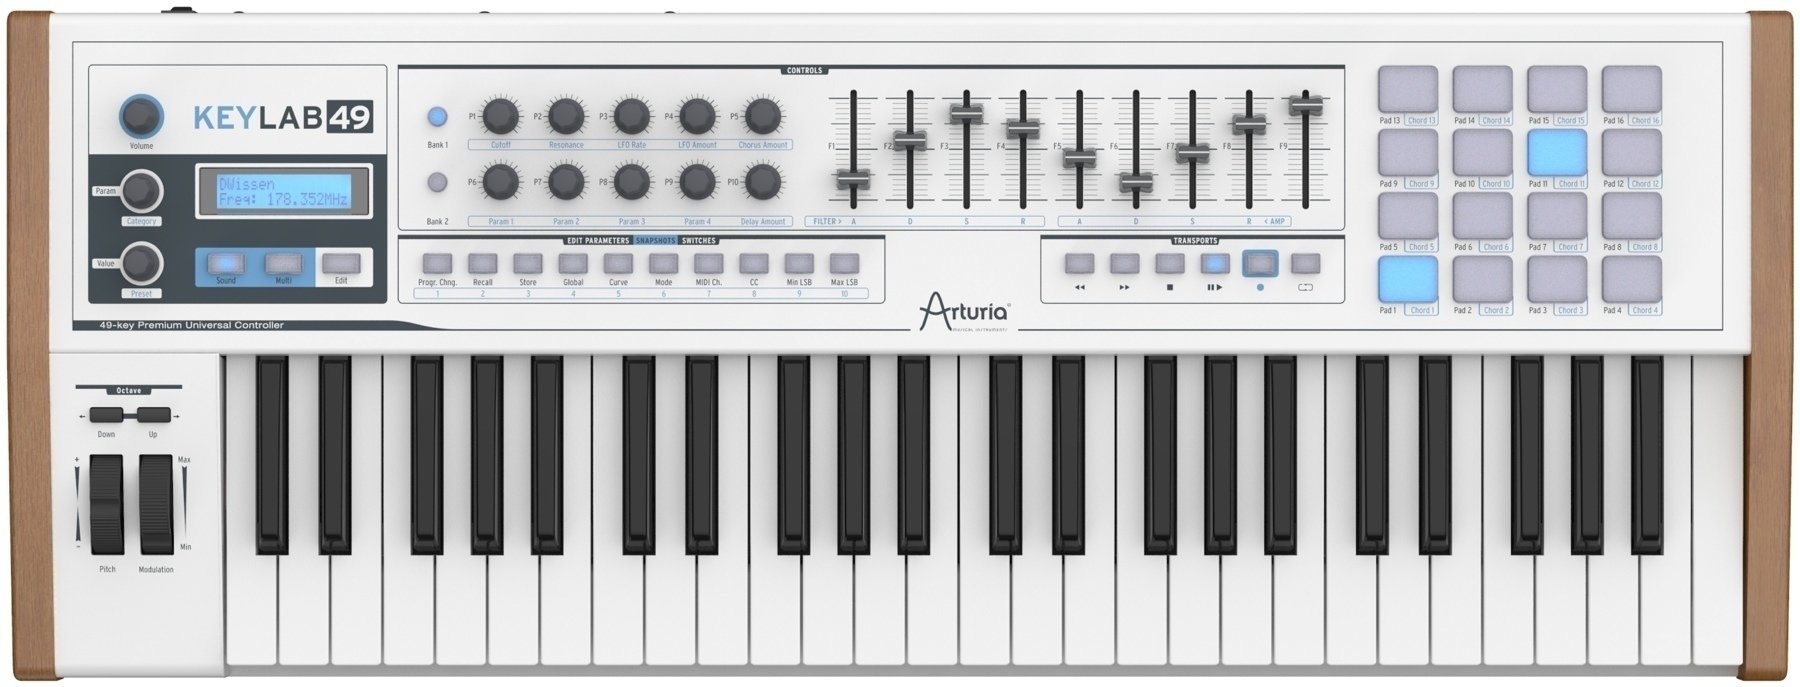 MIDI keyboard Arturia KeyLab 49